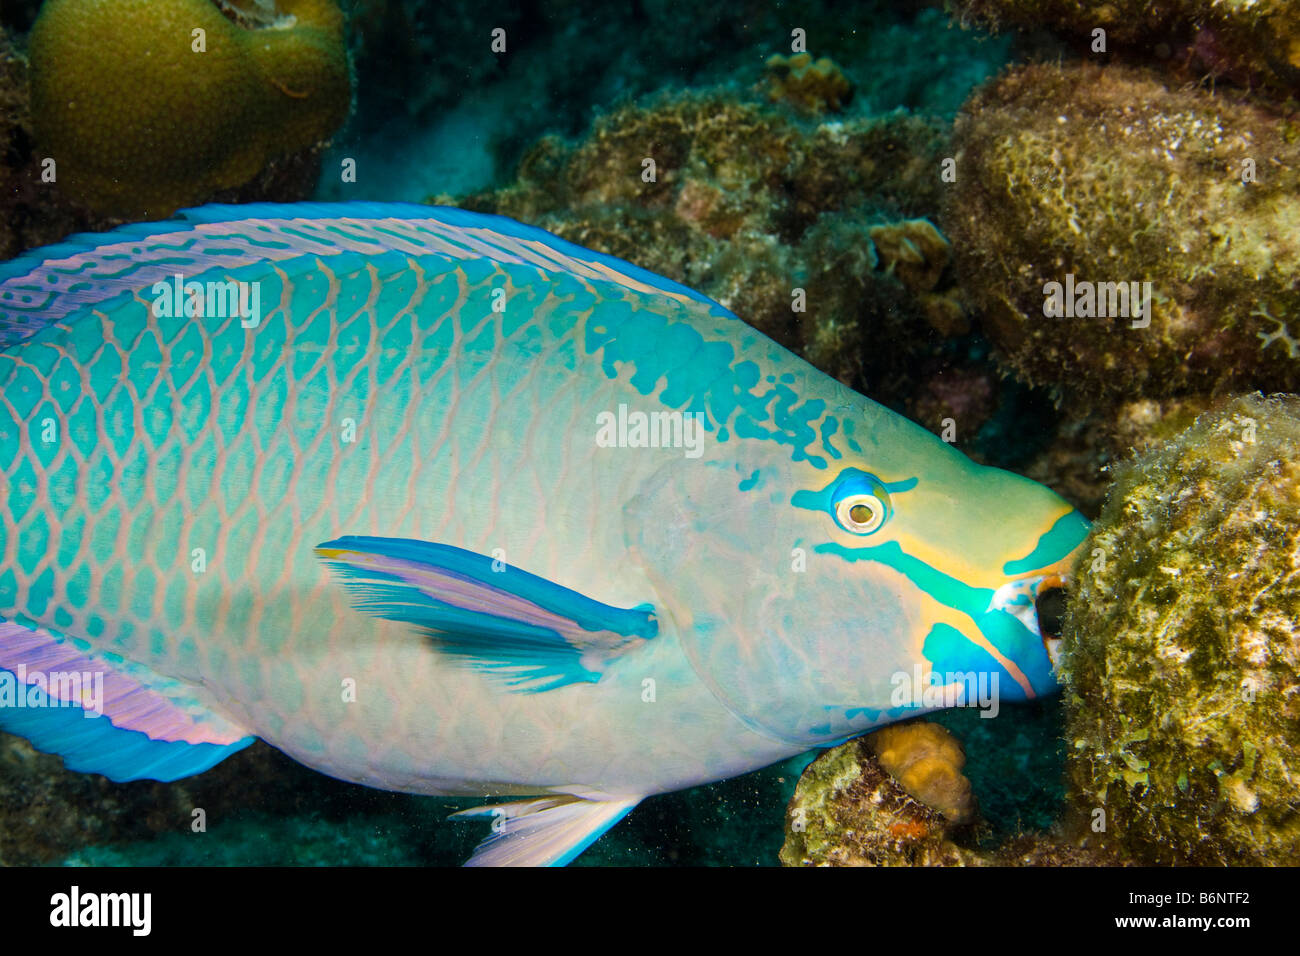 Una regina pesci pappagallo alimentazione, Scarus vetula, terminale maschio o supermale fase, Bonaire, Antille olandesi, dei Caraibi. Foto Stock